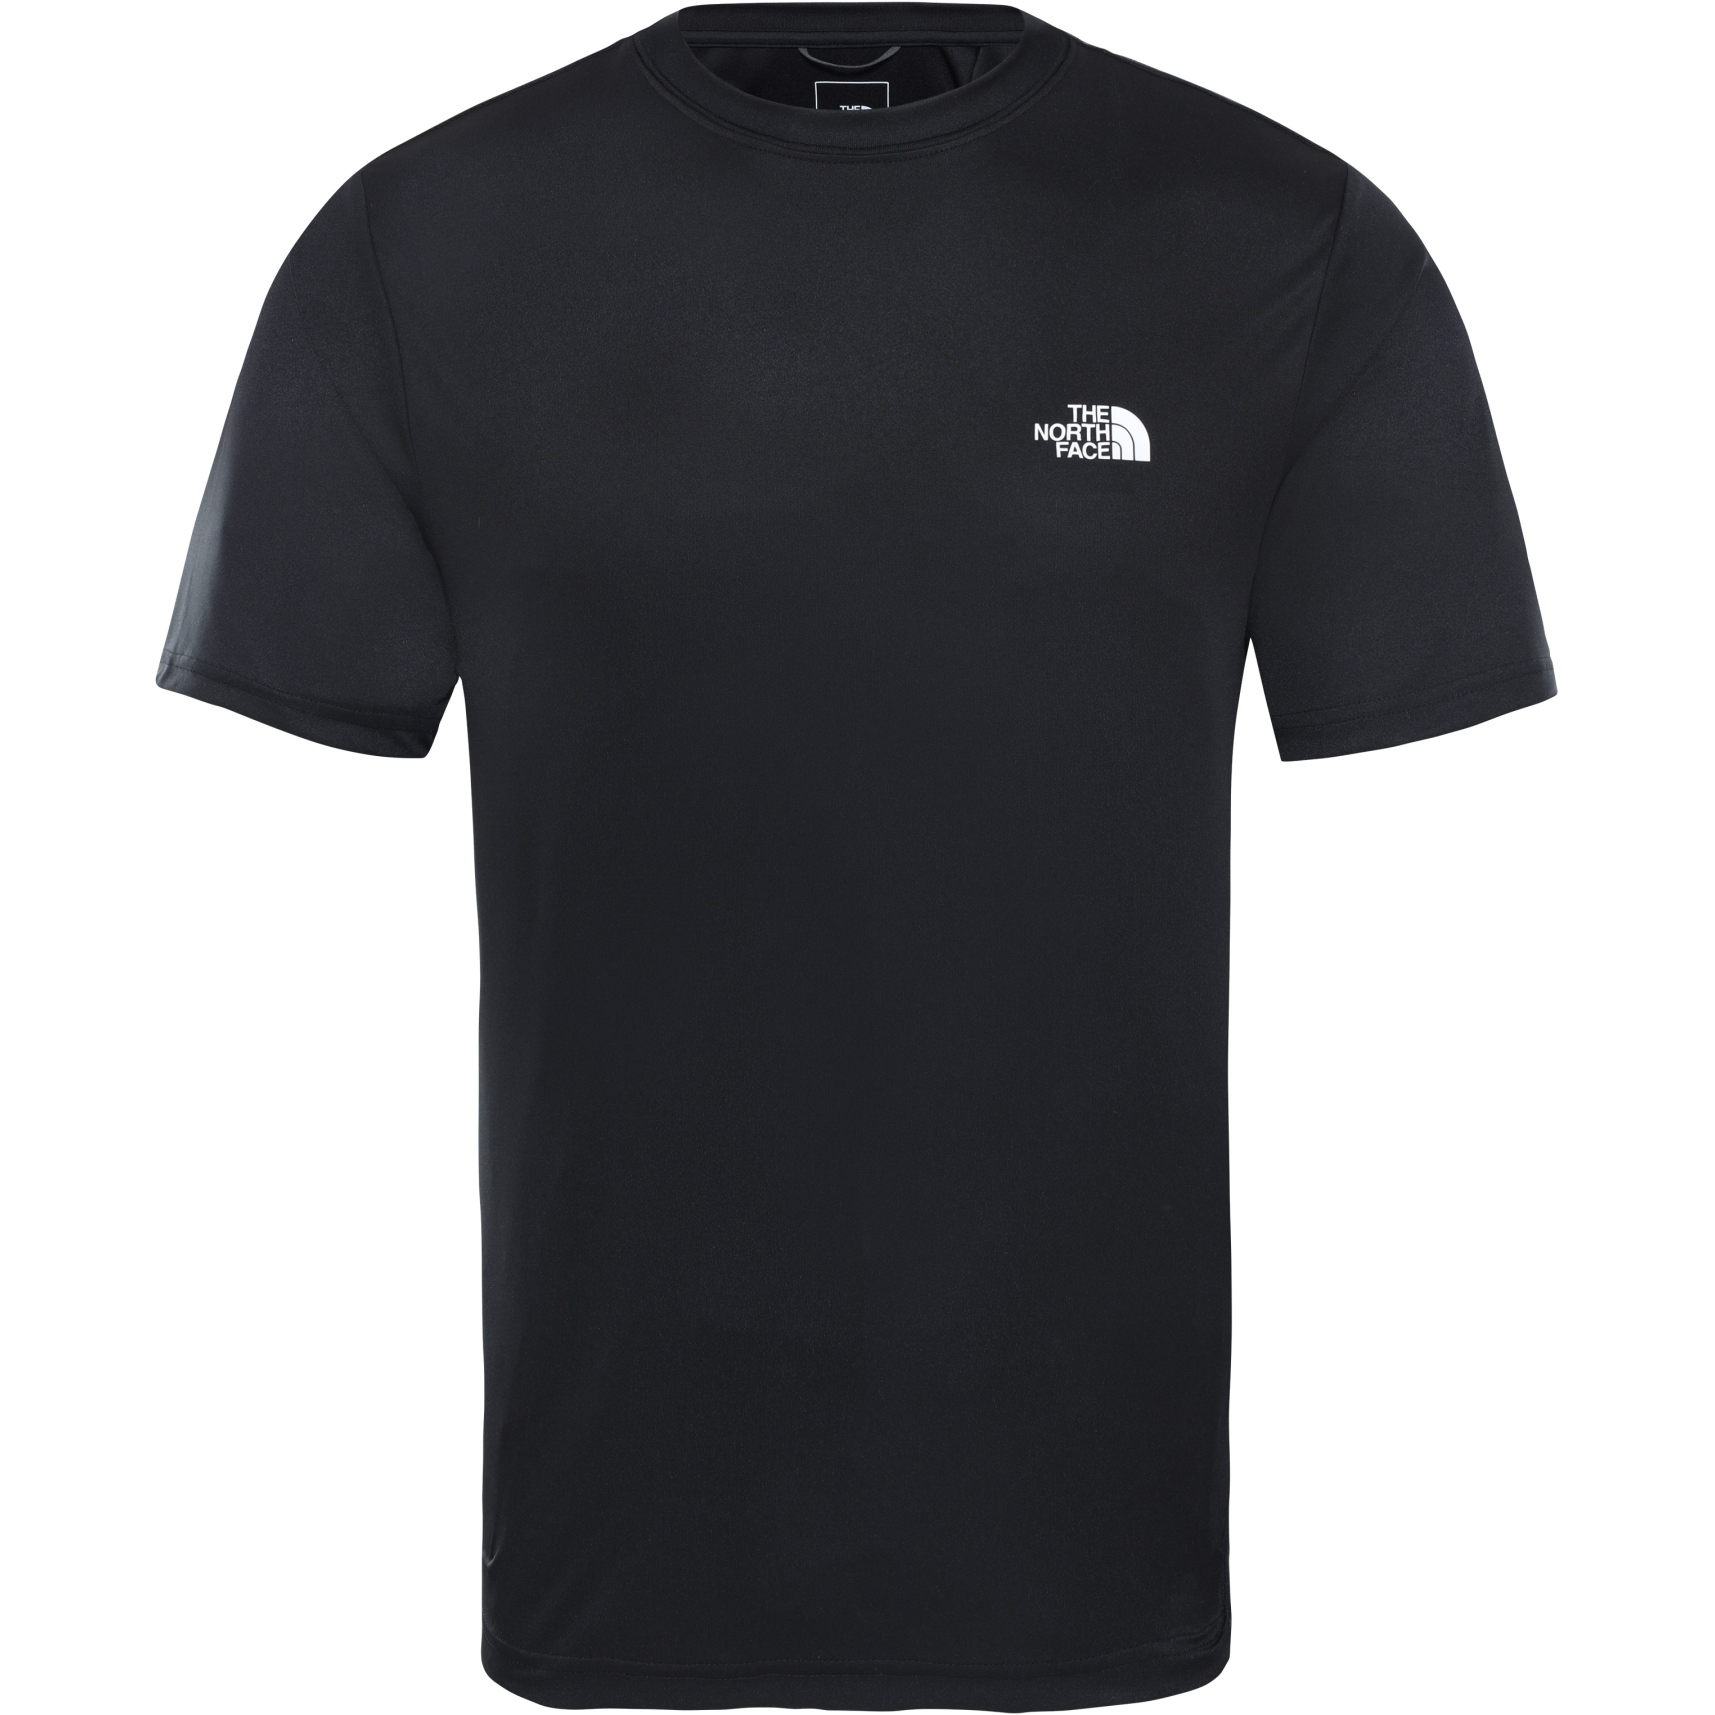 Produktbild von The North Face Herren Reaxion Amp T-Shirt - TNF Black